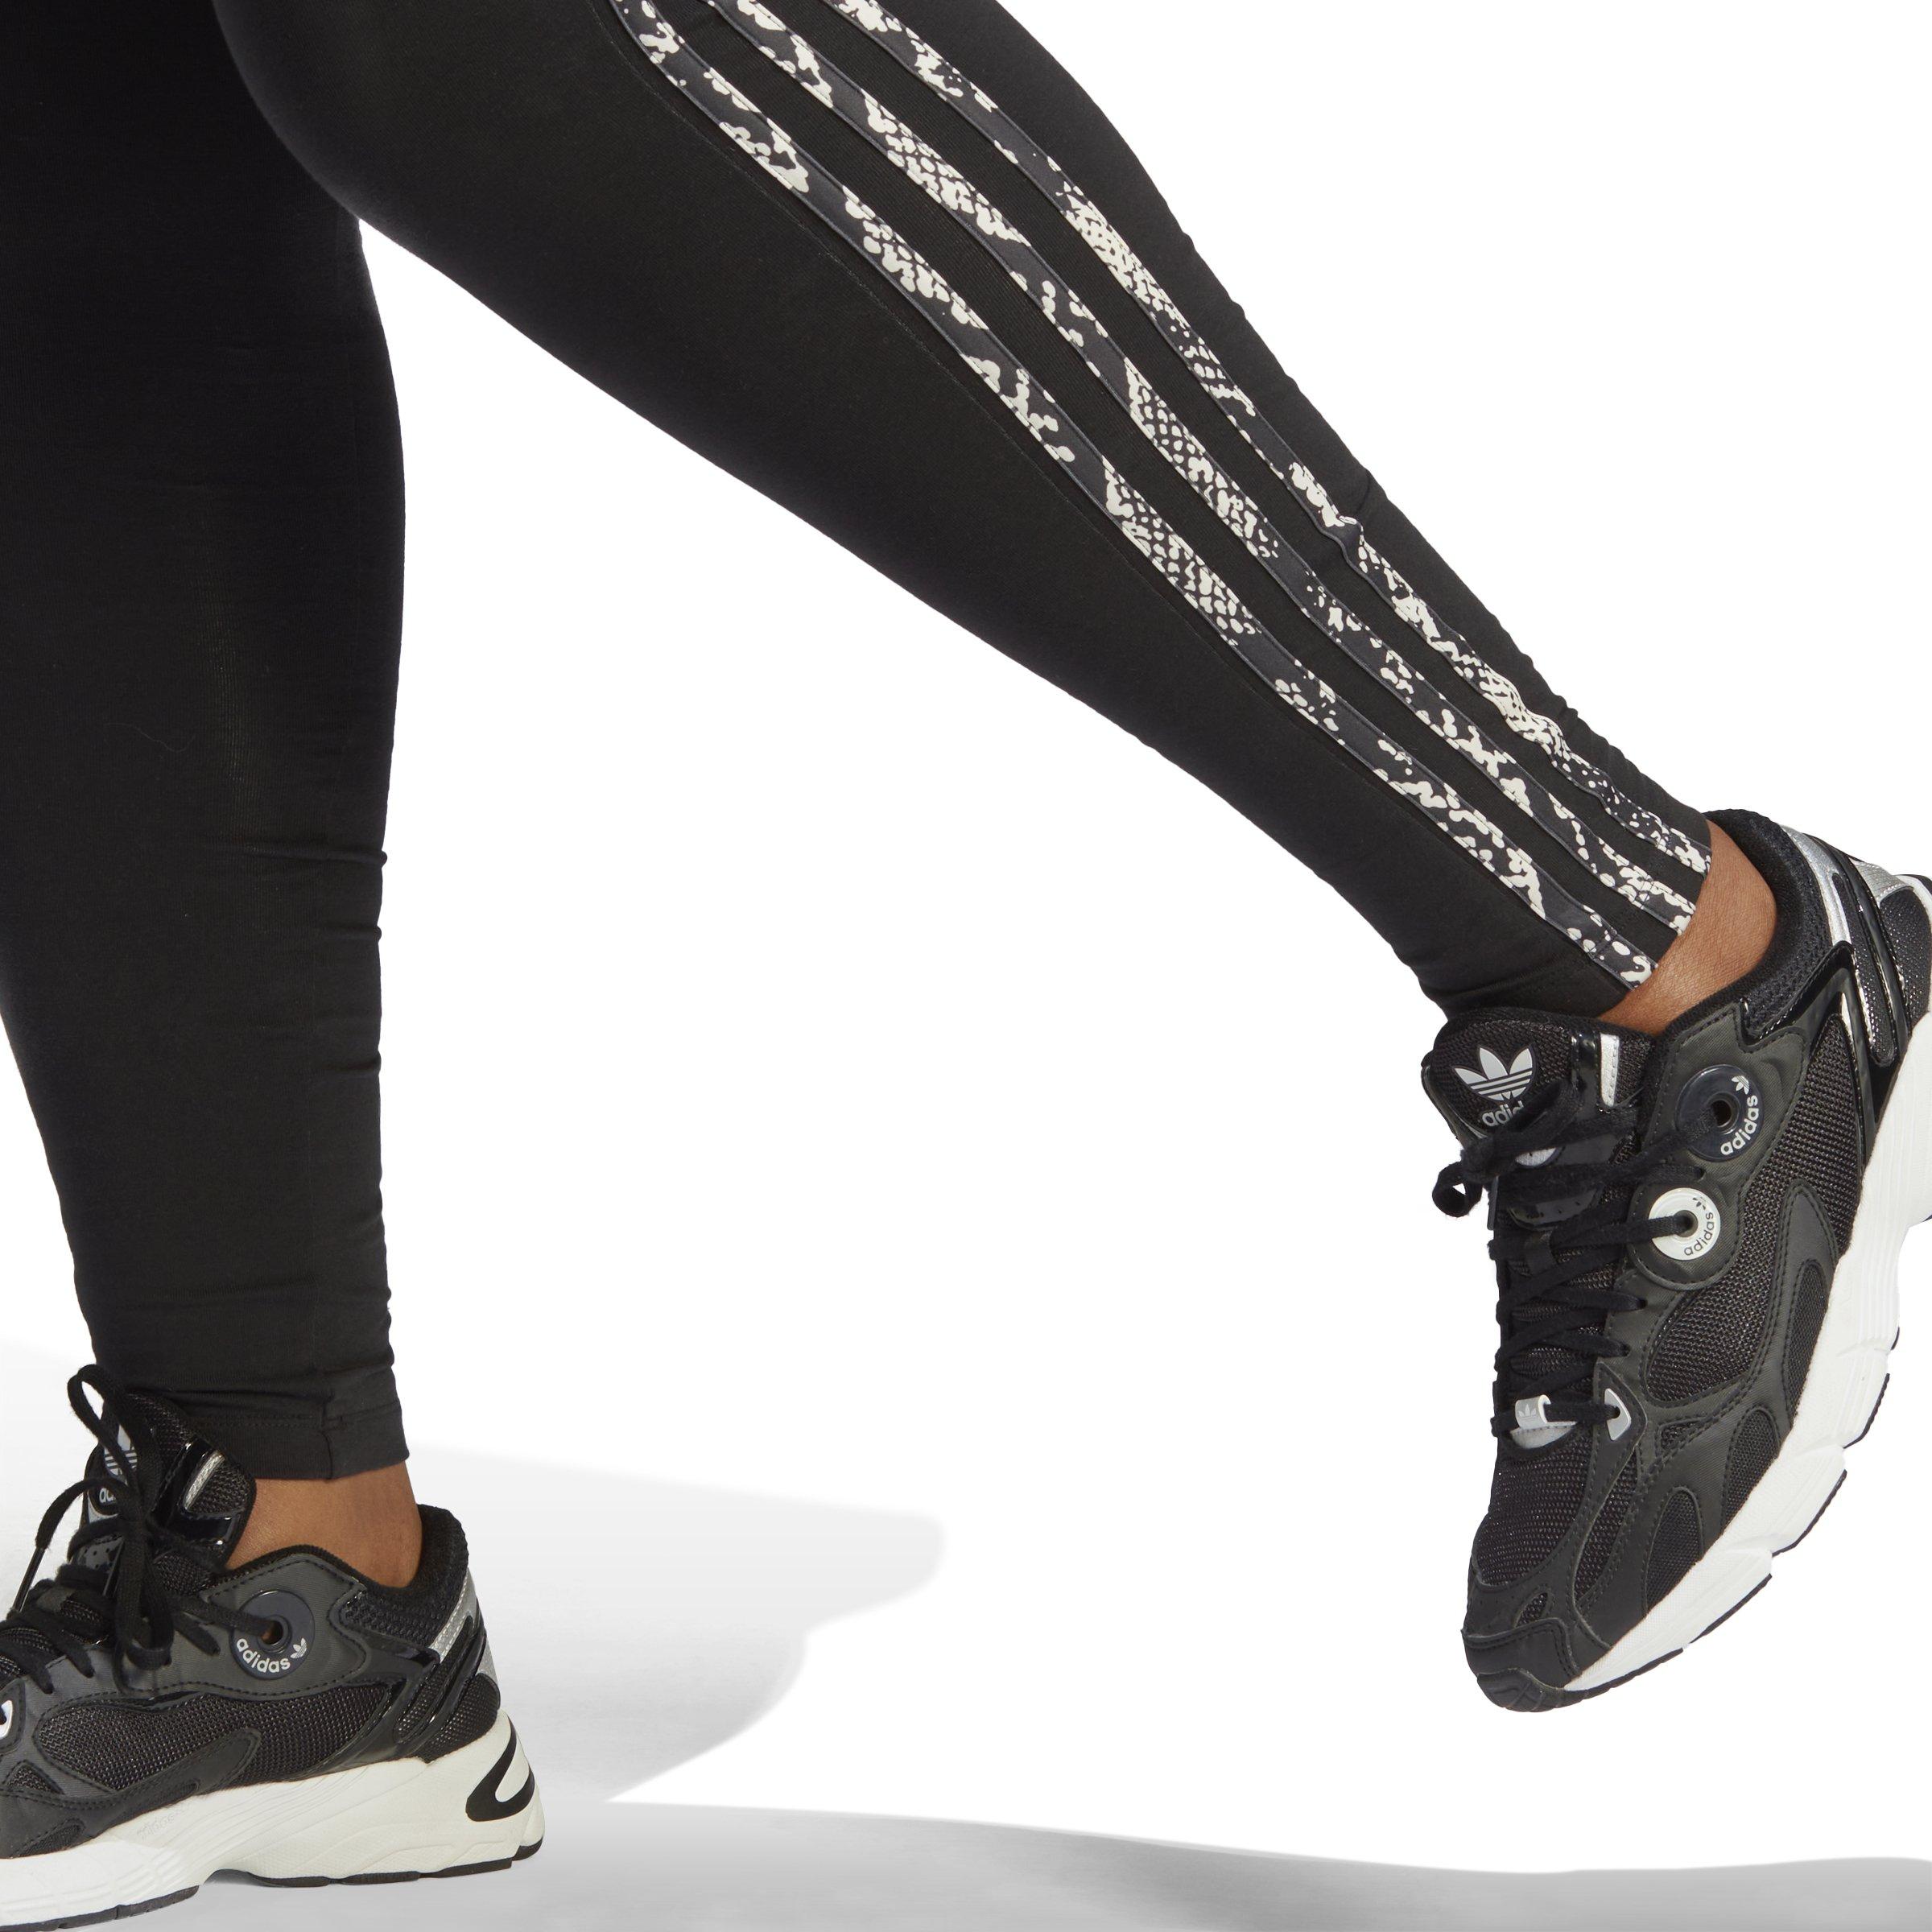 adidas Women's 3-Stripe Snake Print Leggings-Black - Hibbett